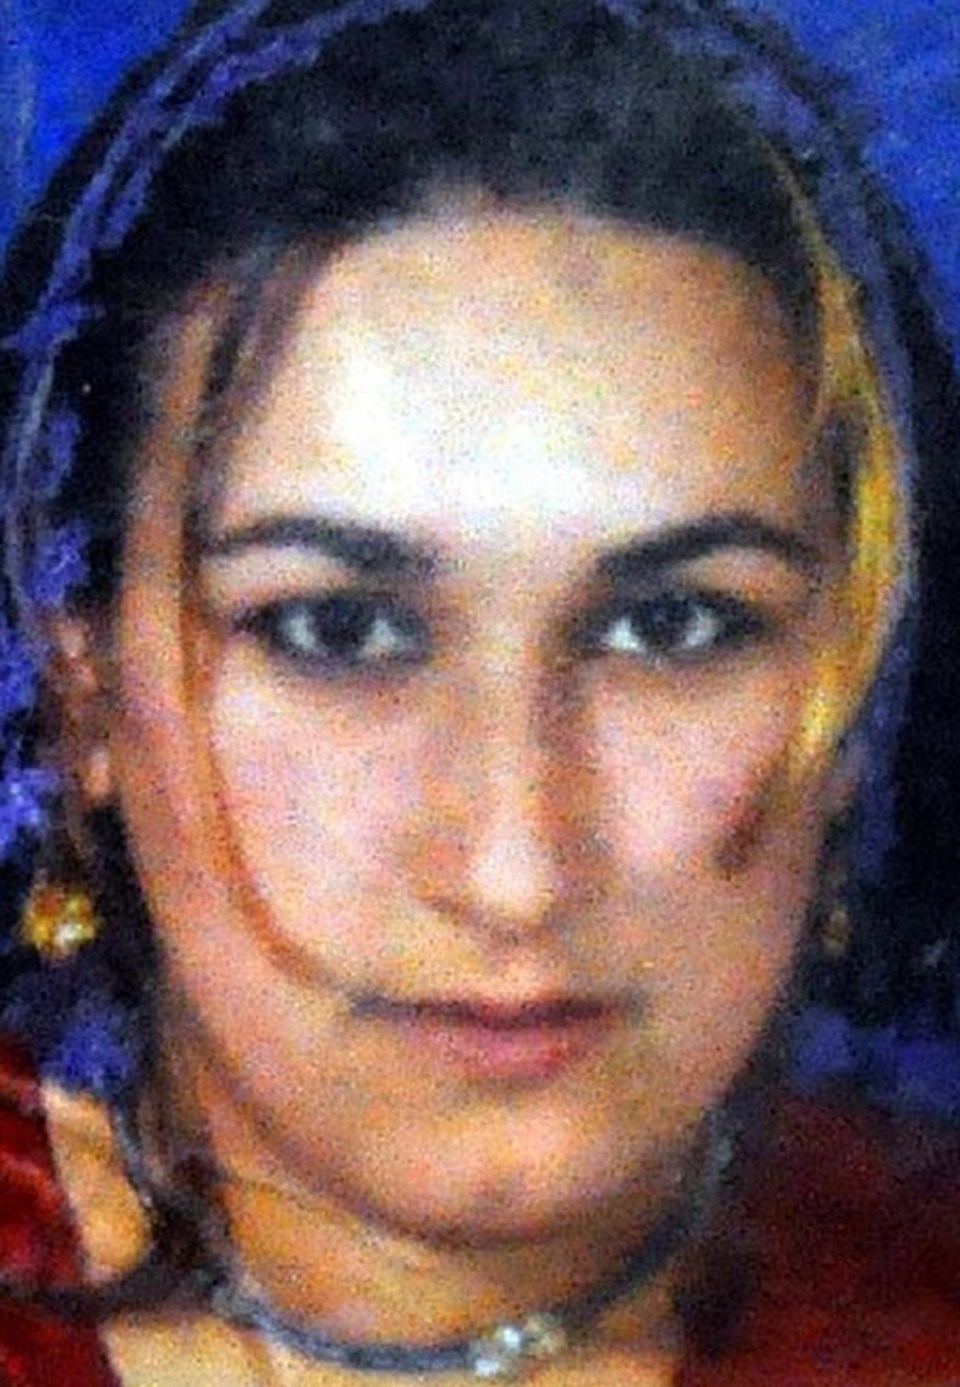 Yapılan incelemede Metin Avcı'nın eşini cezaevi kantininden aldığı 3 santimlik bıçakla boğazını keserek öldürdüğü, genç kadının çağrı butonuna basamadığı anlaşıldı
